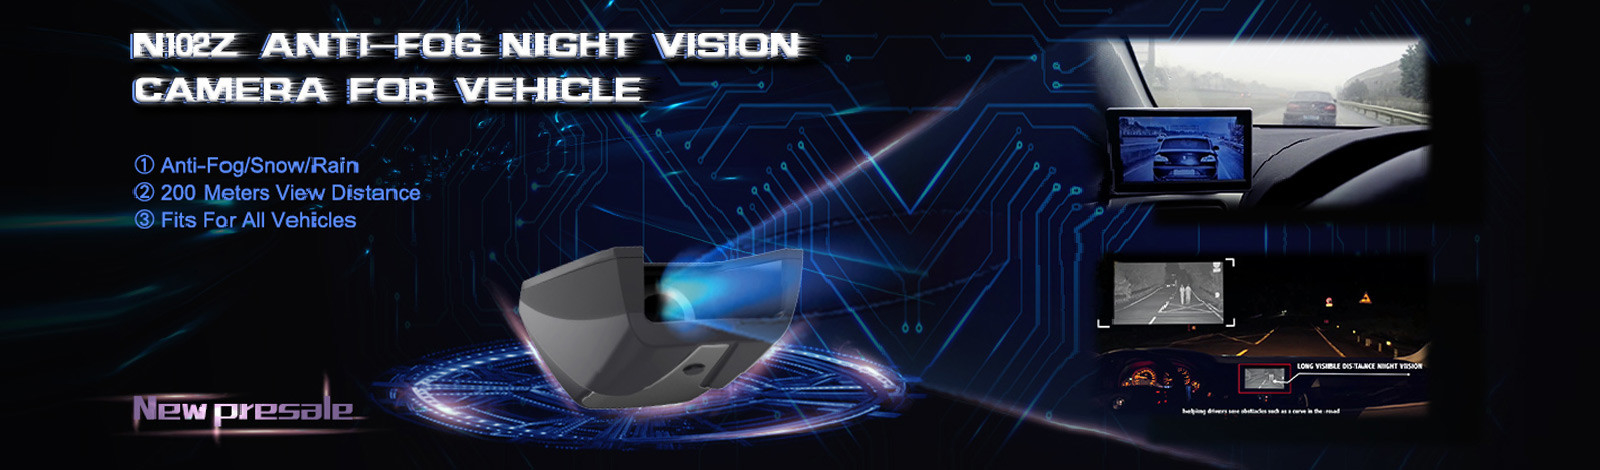 Night Vision Car Camera System